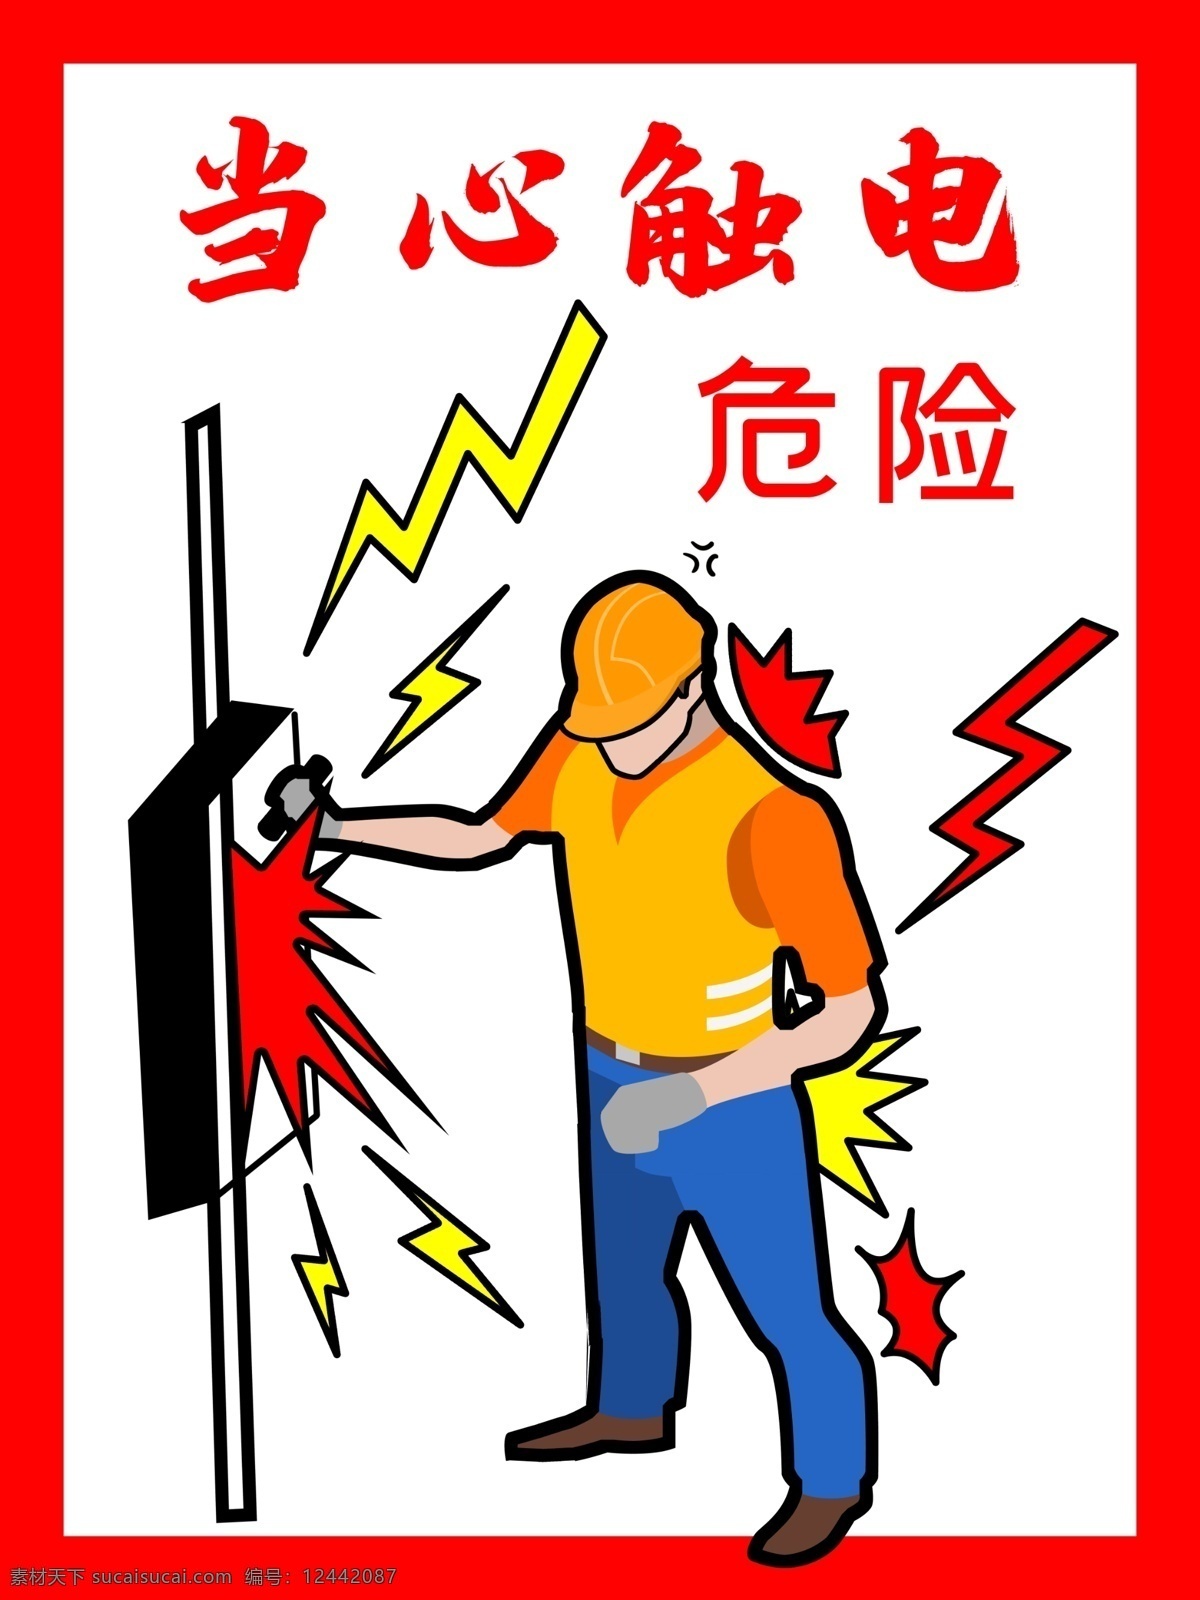 当心触电 高压危险 高压 触摸 标志 安全标识 标志图标 公共标识标志 有电 危险 警示牌 请勿触摸 安全生产 预防为主 温馨提示牌 触电危险